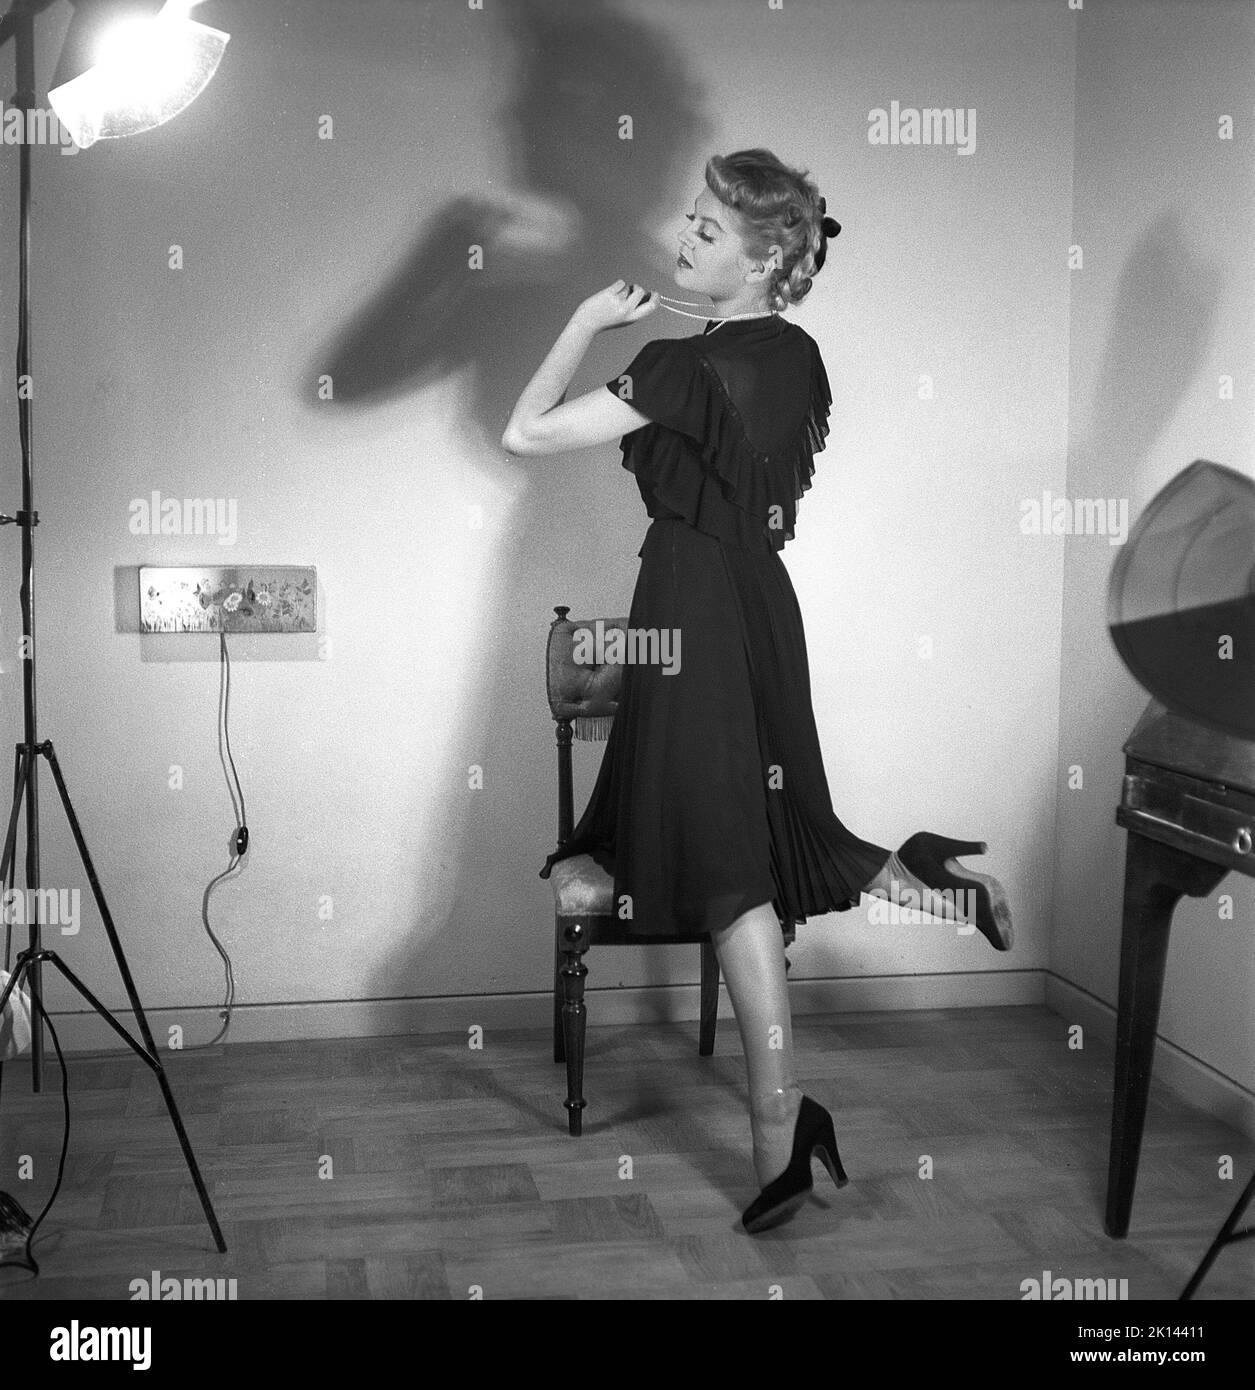 Damenmode im Jahr 1940s. Eine junge Frau, die für ein Damenmagazin fotografiert wurde, um die Damenmode von 1945 zu zeigen. Das weibliche Model trägt ein schwarzes Abendkleid in verschiedenen Stoffschichten. Schweden 1945. Kristoffersson Ref. R2-6 Stockfoto